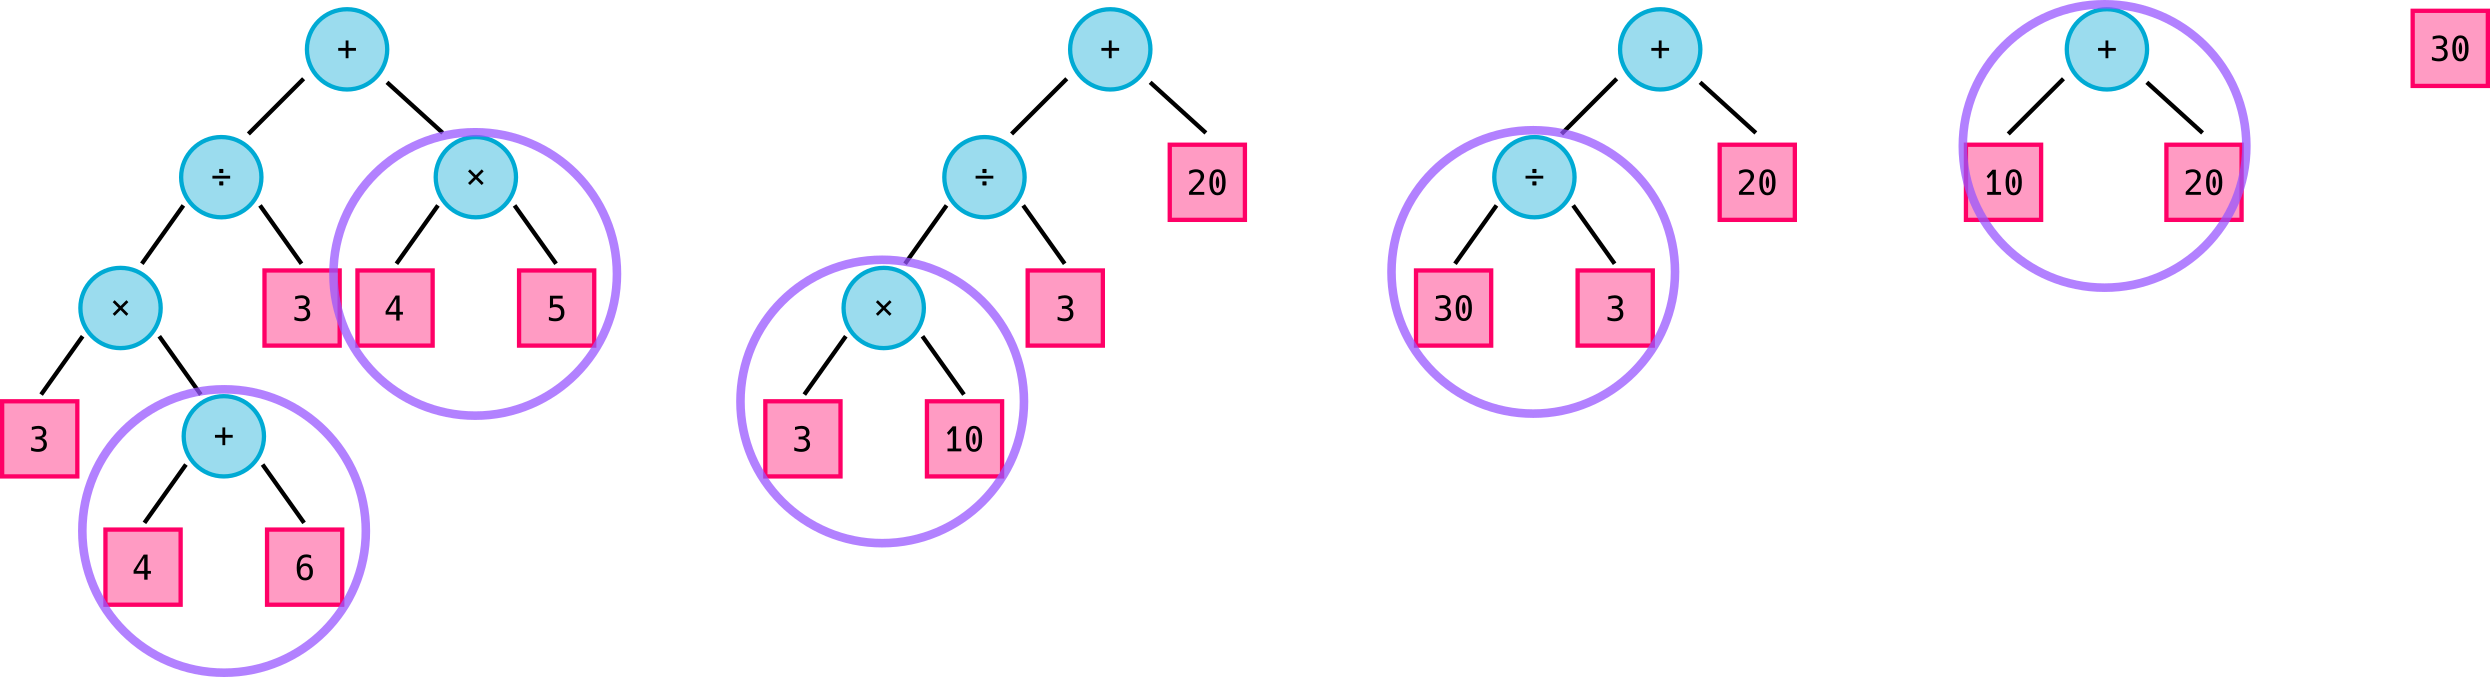 Process complex tree